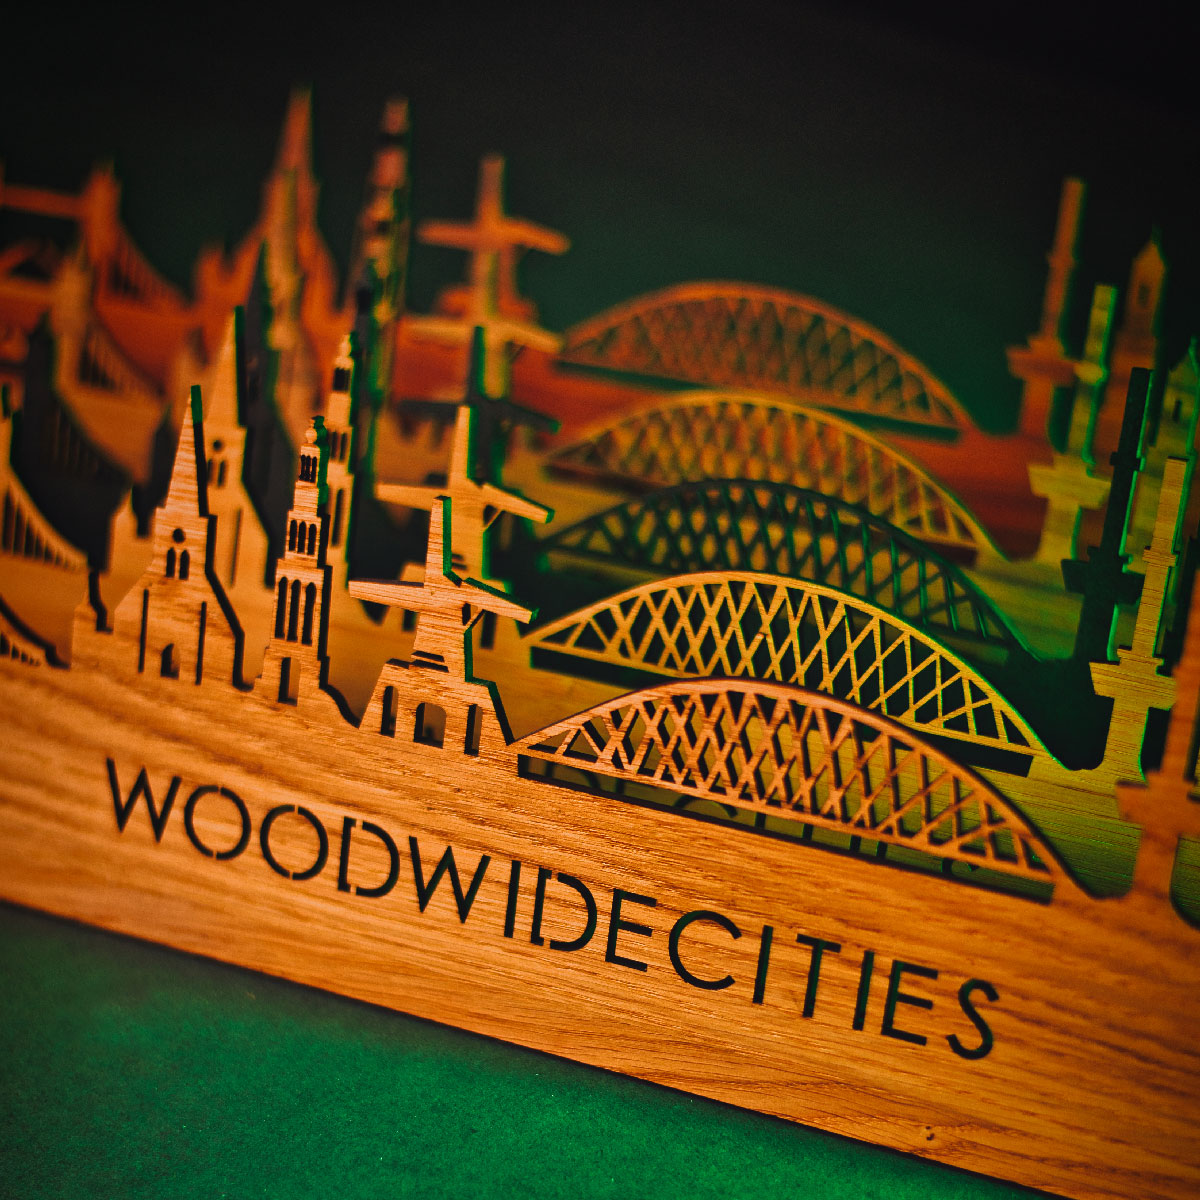 Skyline Klok Oosterwolde Palissander houten cadeau wanddecoratie relatiegeschenk van WoodWideCities